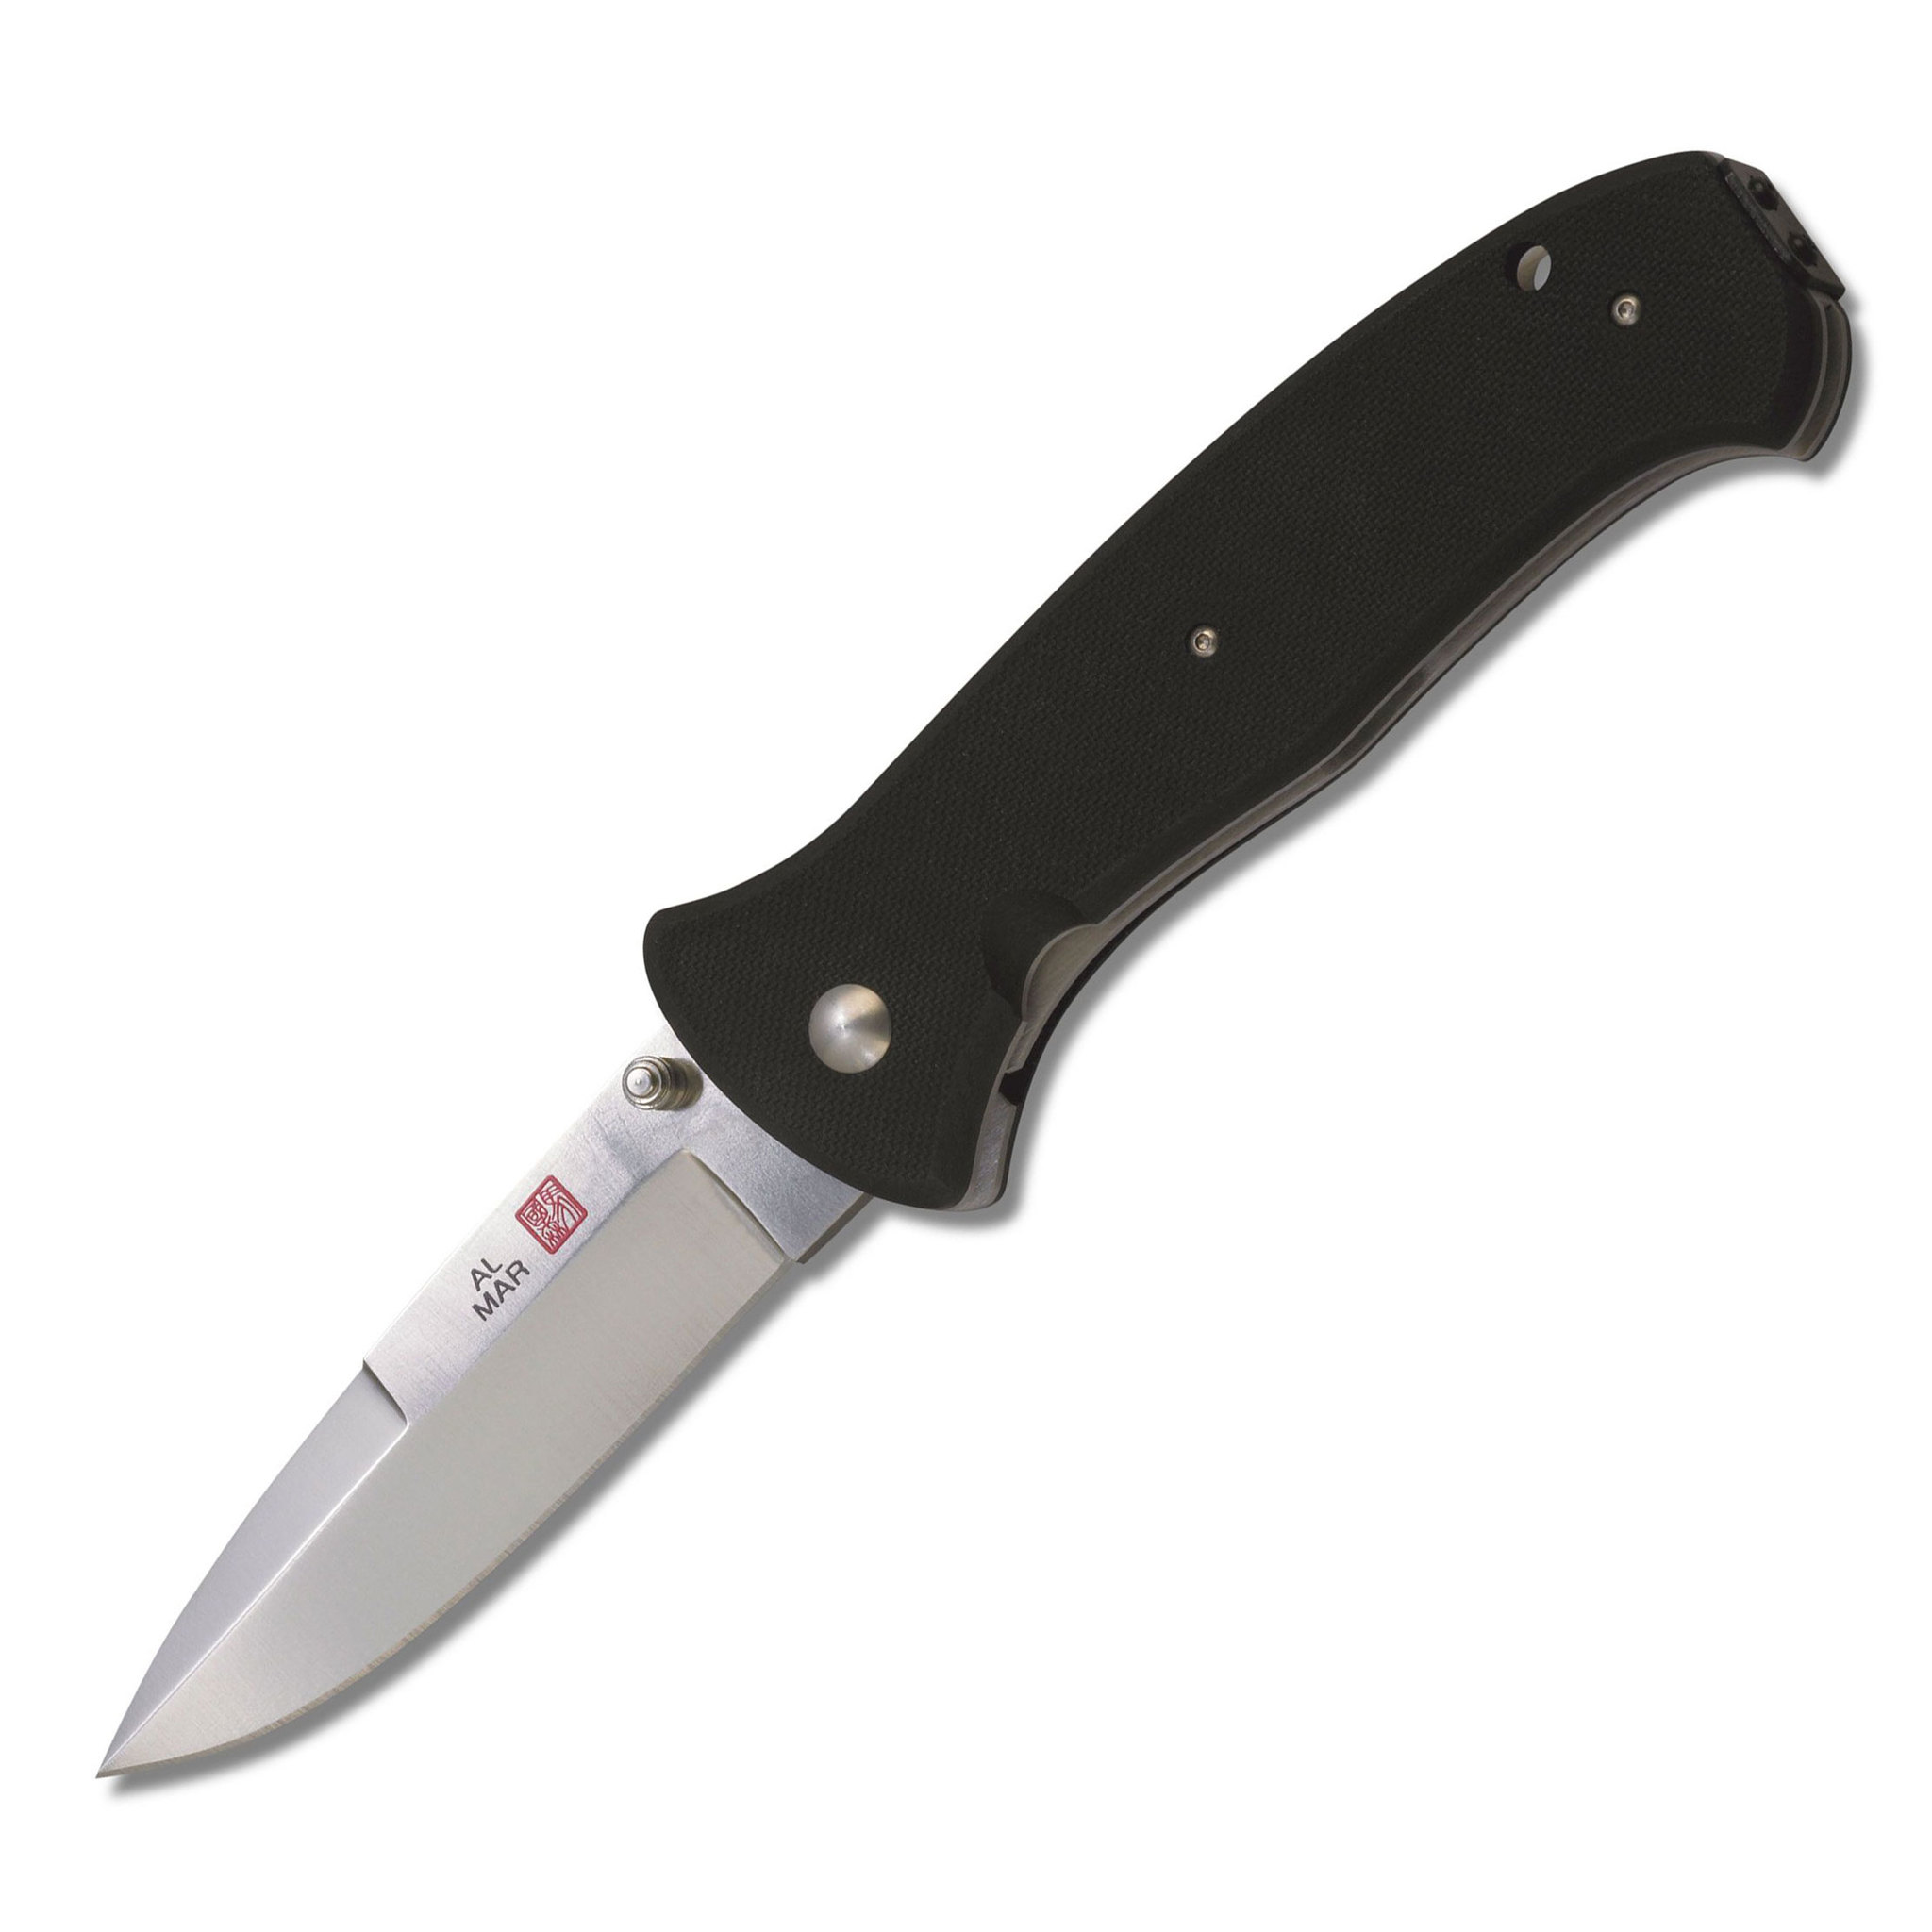 Нож складной Al Mar Mini Sere 2000™, сталь VG-10 Satin finish, рукоять стеклотекстолит G-10 нож с фиксированным клинком gerber gator сталь 420hc рукоять стеклотекстолит g10